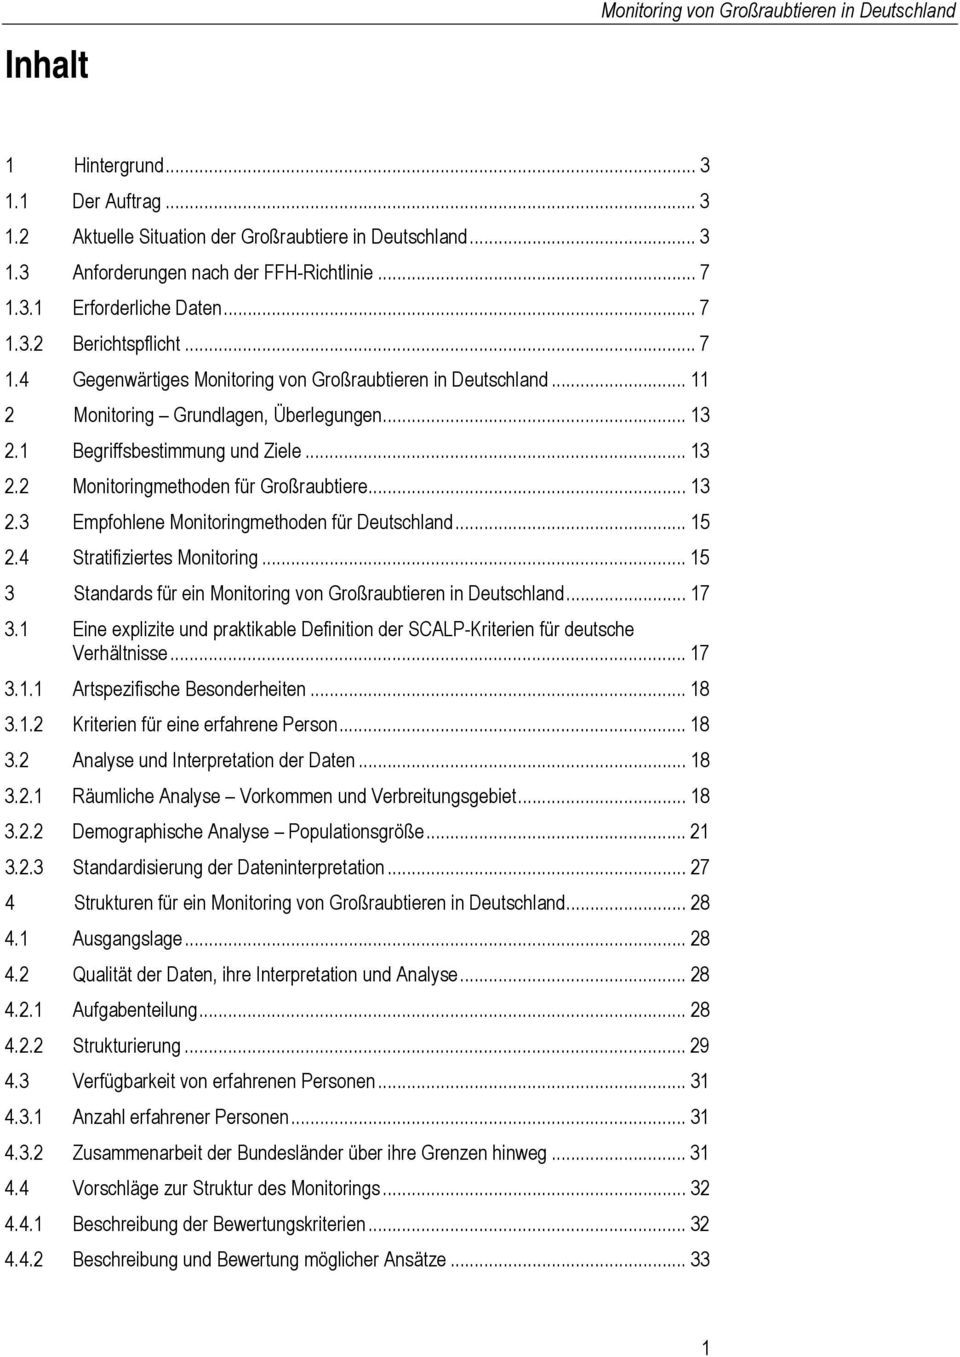 .. 15 2.4 Stratifiziertes Monitoring... 15 3 Standards für ein... 17 3.1 Eine explizite und praktikable Definition der SCALP-Kriterien für deutsche Verhältnisse... 17 3.1.1 Artspezifische Besonderheiten.